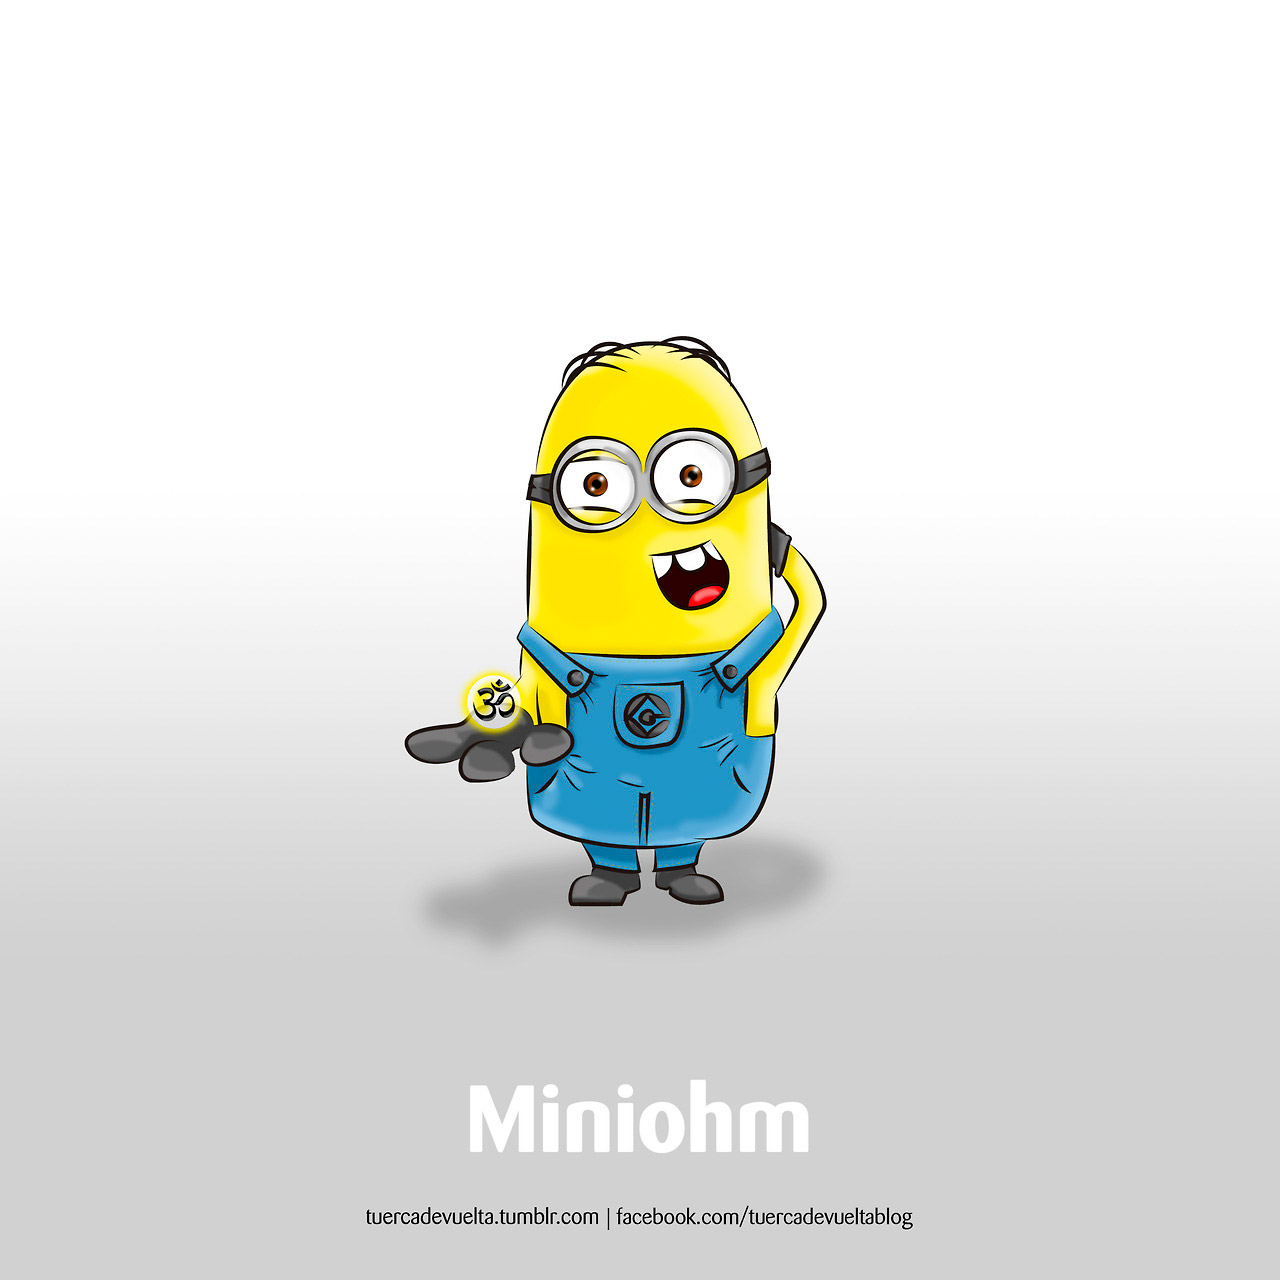 Miniohm